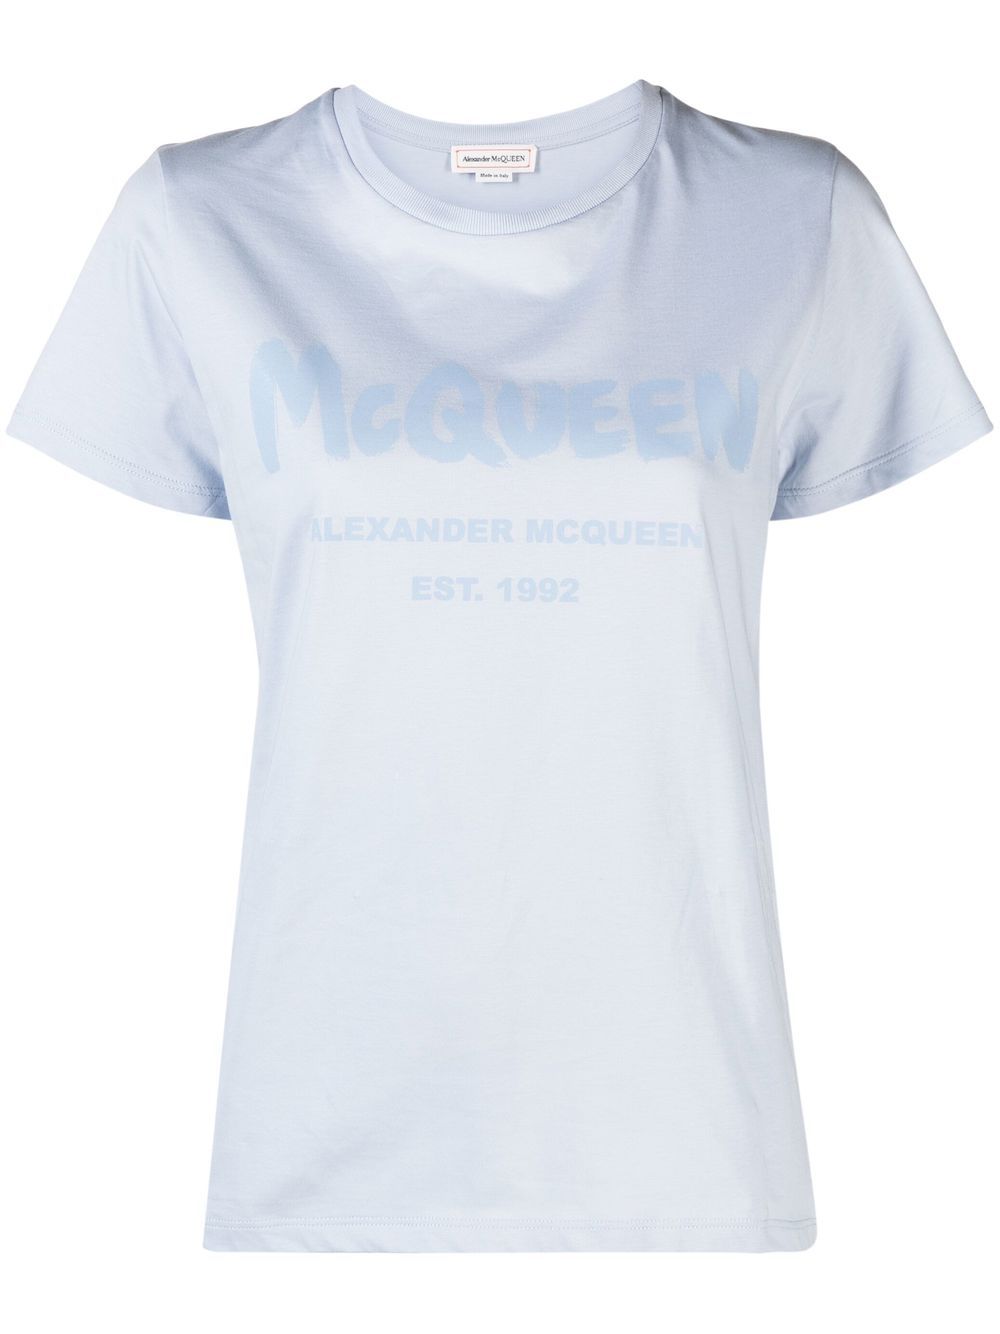 Alexander McQueen graffiti logo T-shirt - Blue von Alexander McQueen